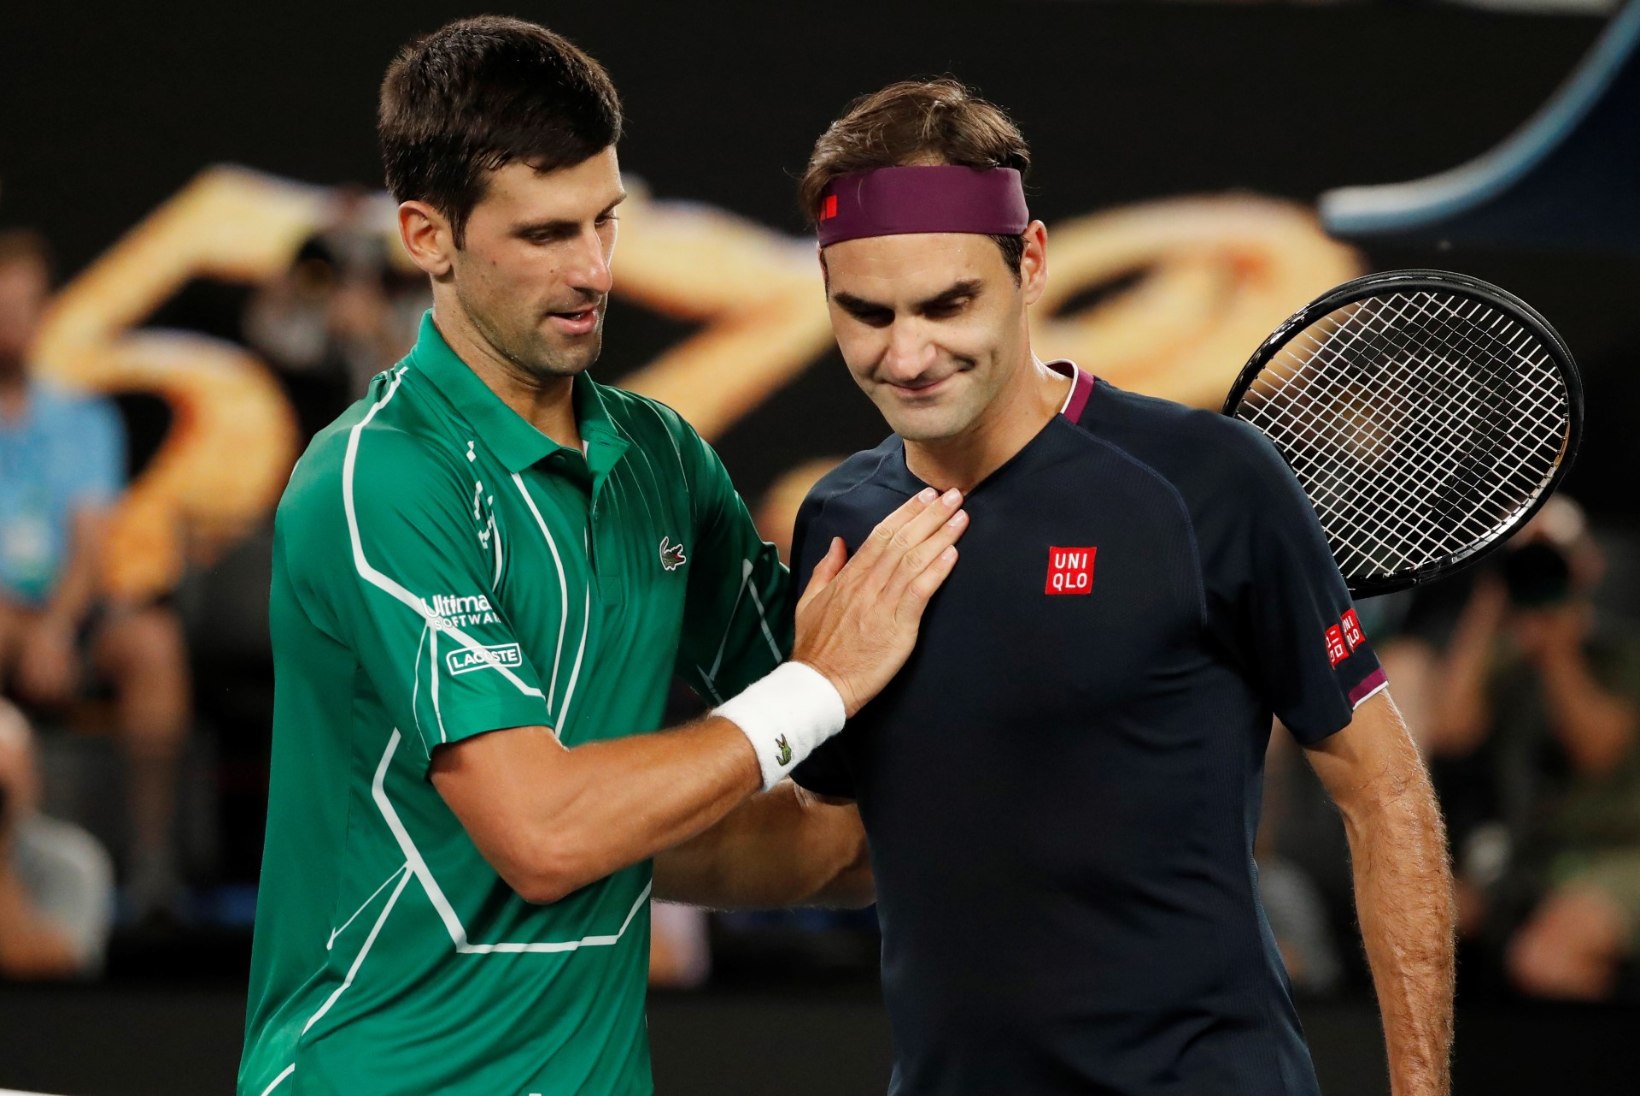 Djokovic jõudis ülivõimsa tähiseni ning läheneb Federeri rekordile